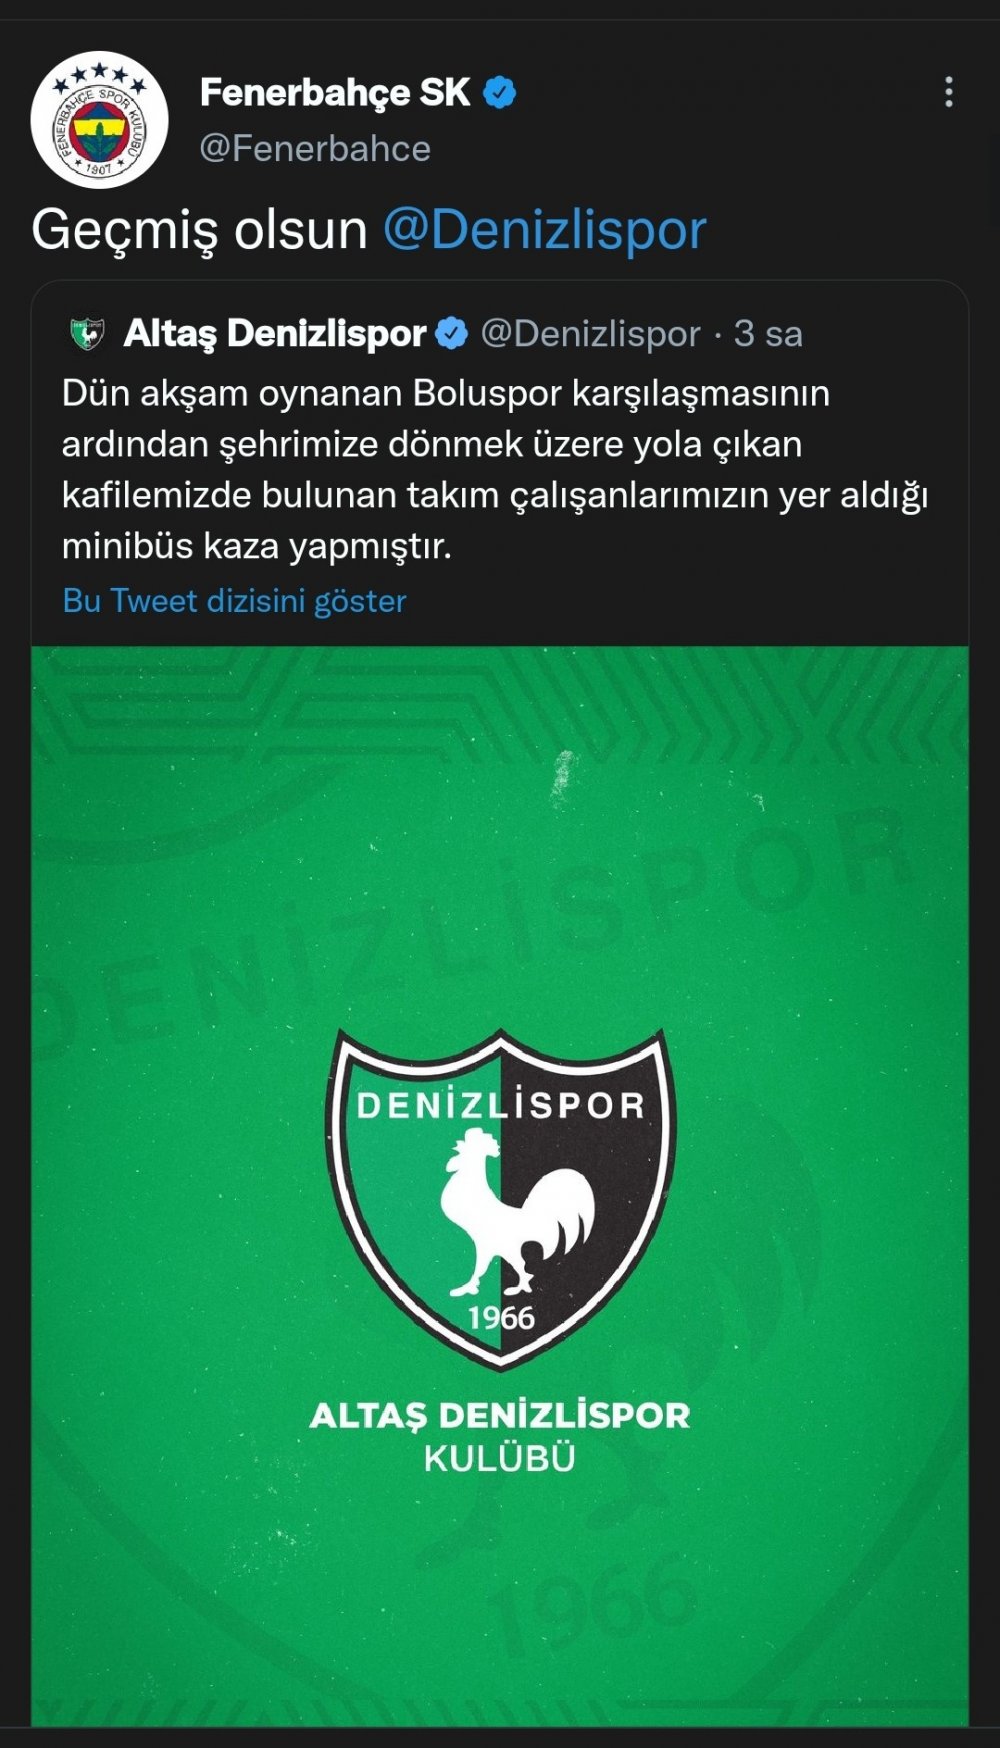 Denizlispor kafilesinin geçirdiği trafik kazasının ardından Türkiye Futbol Federasyonu ve spor kulüpleri geçmiş olsun mesajı yayımladı.